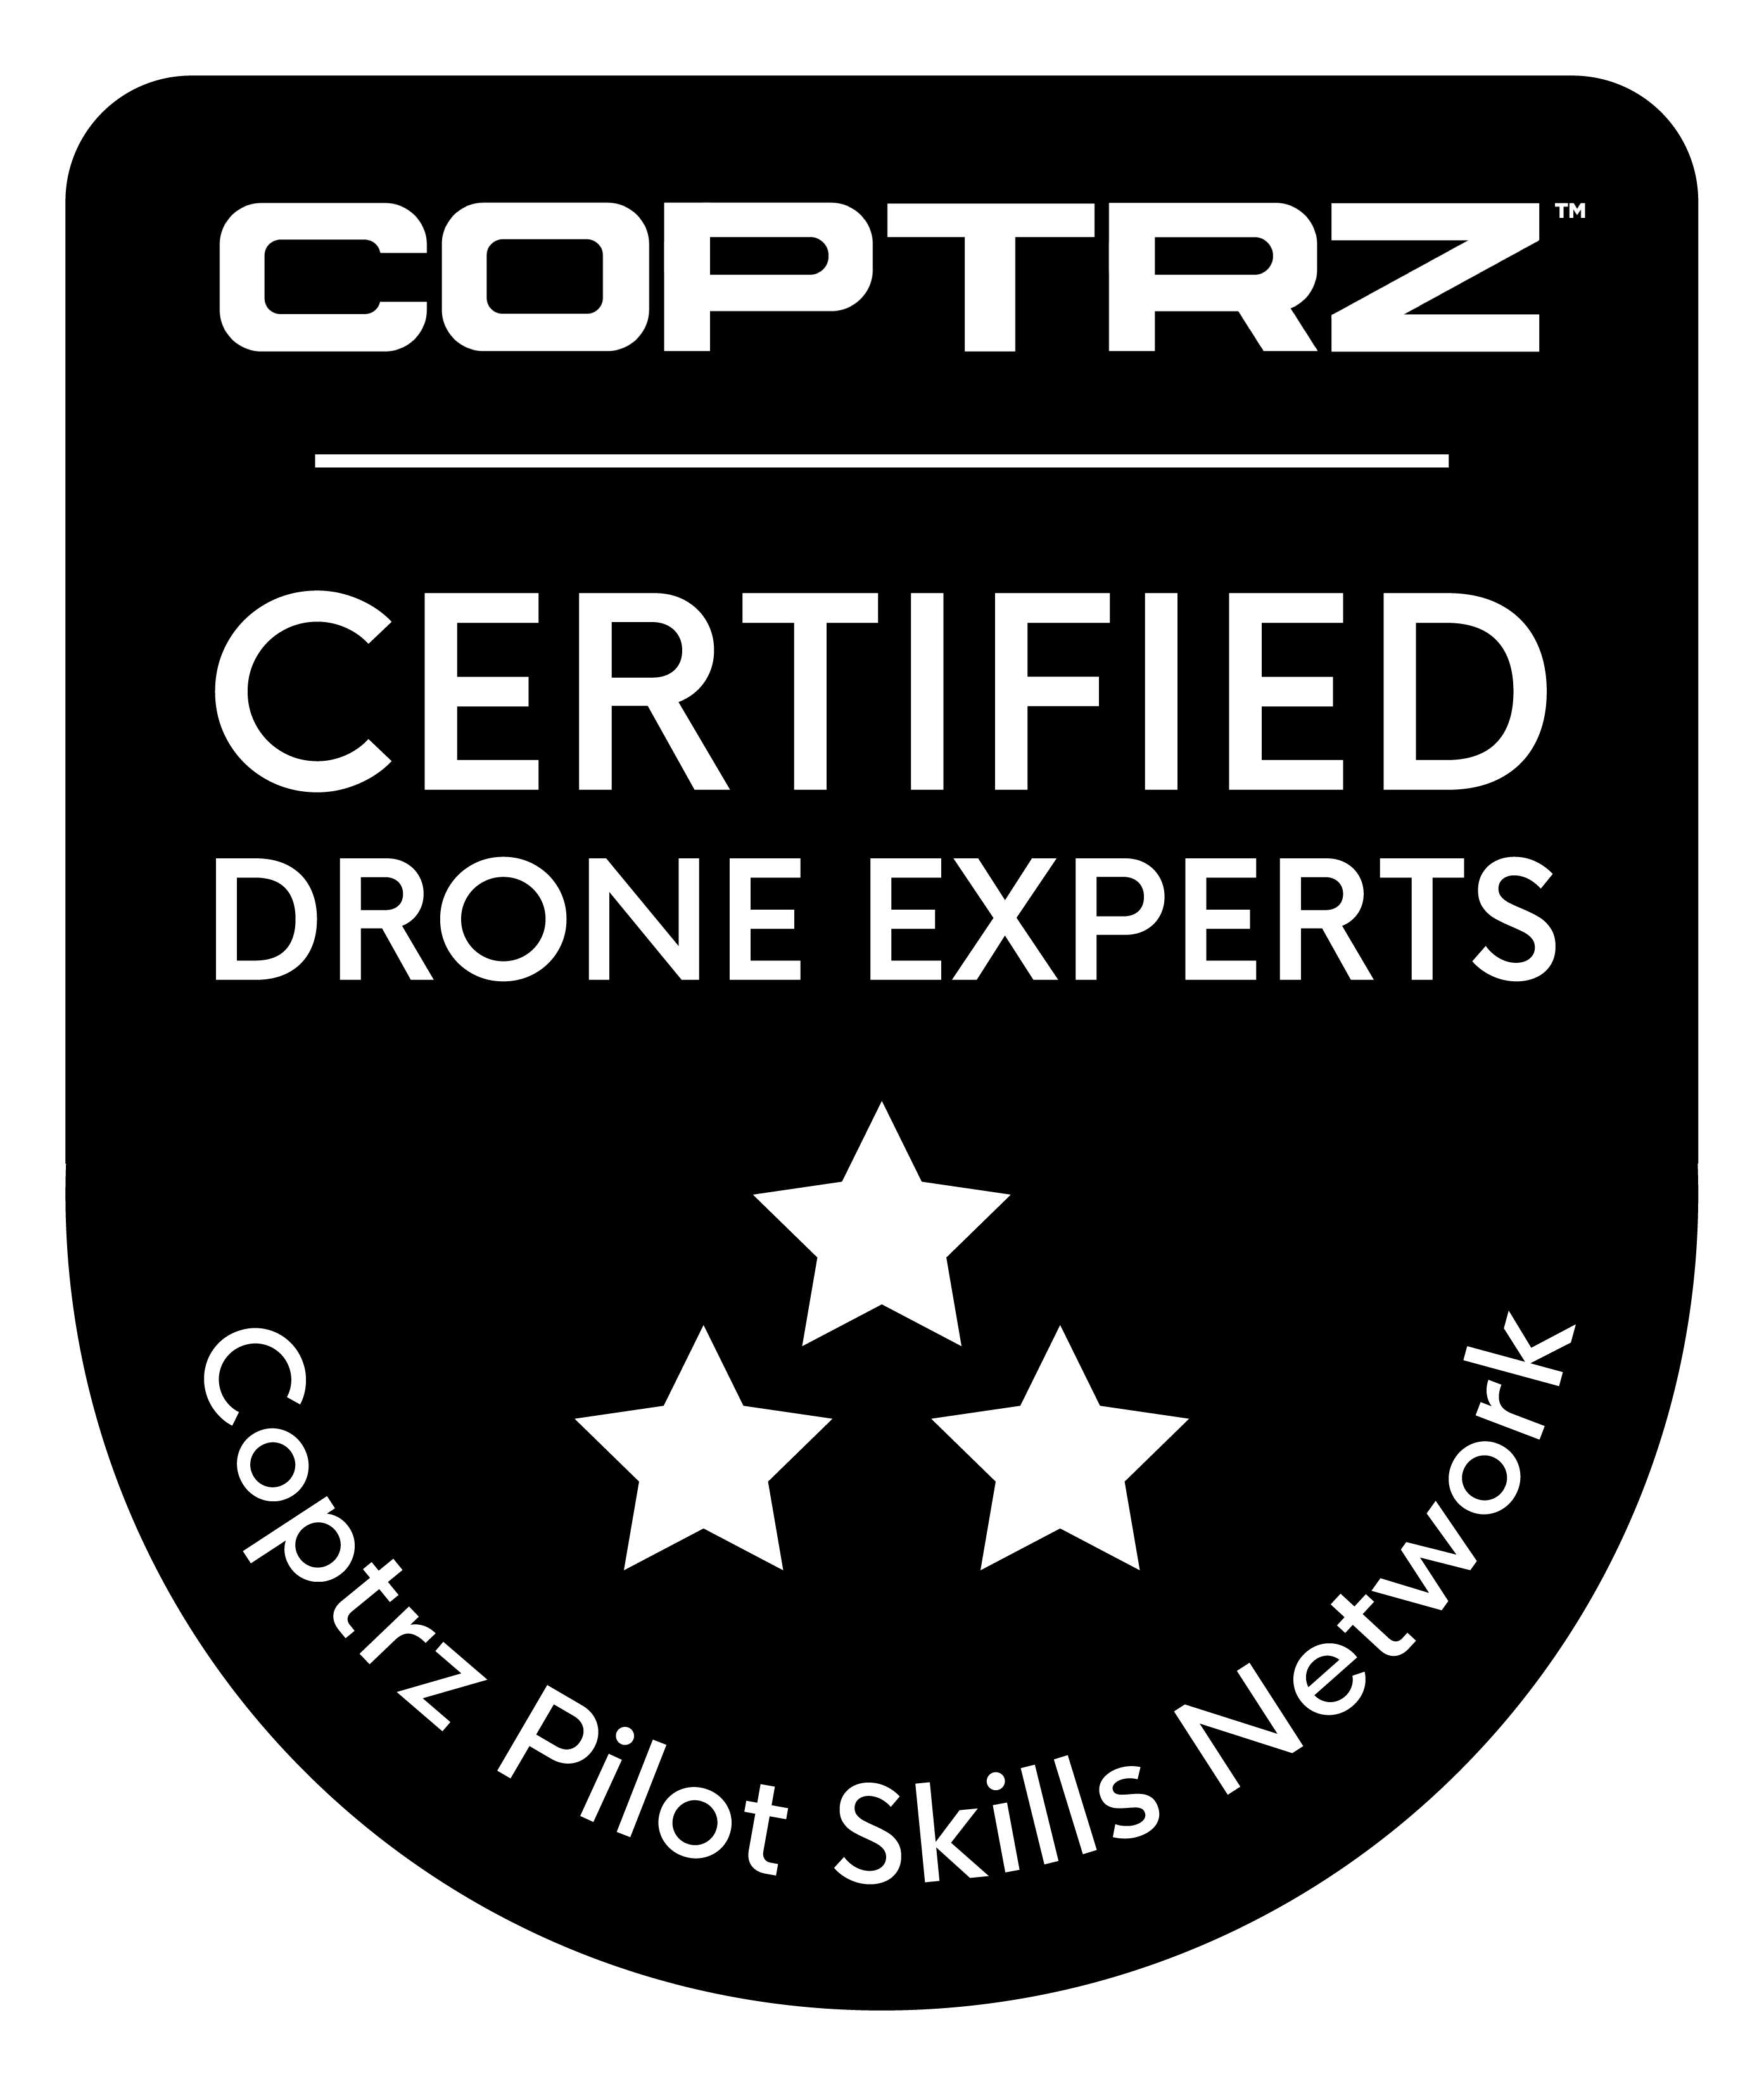 Distintivo de piloto de drones certificado por Coptrz